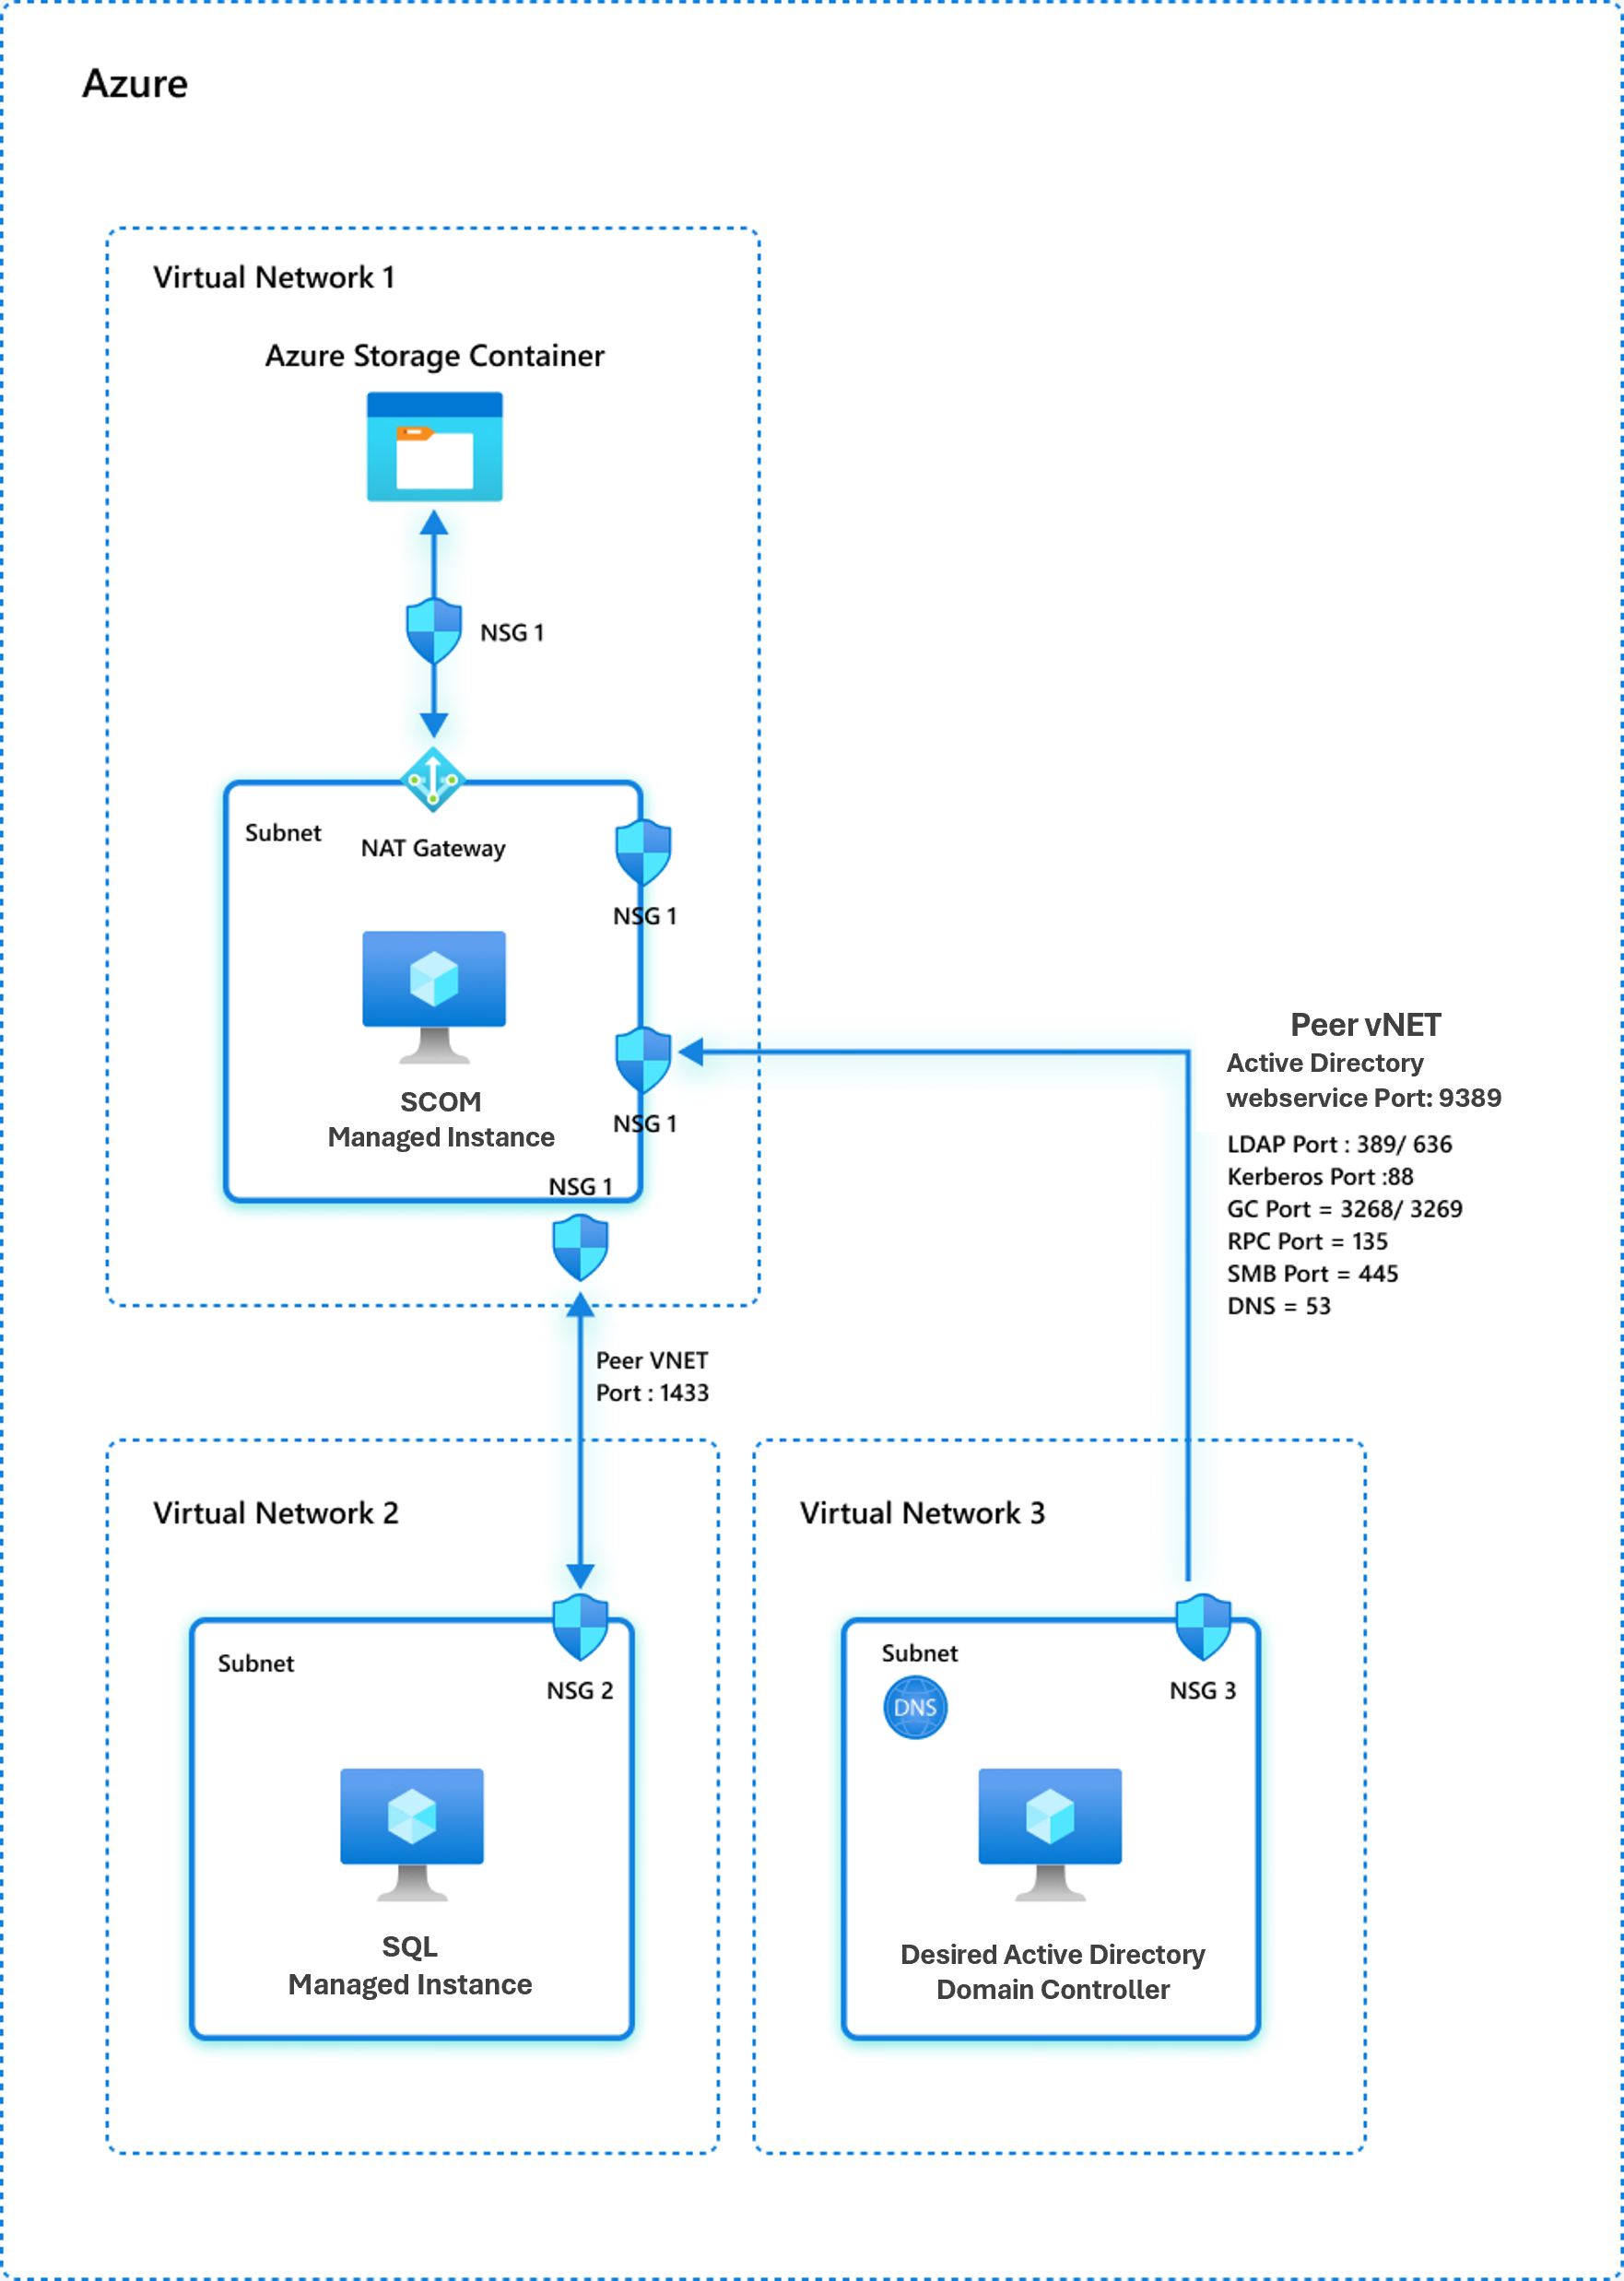 Képernyőkép a 2. hálózati modellről az Azure-ban üzemeltetett tartományvezérlővel.